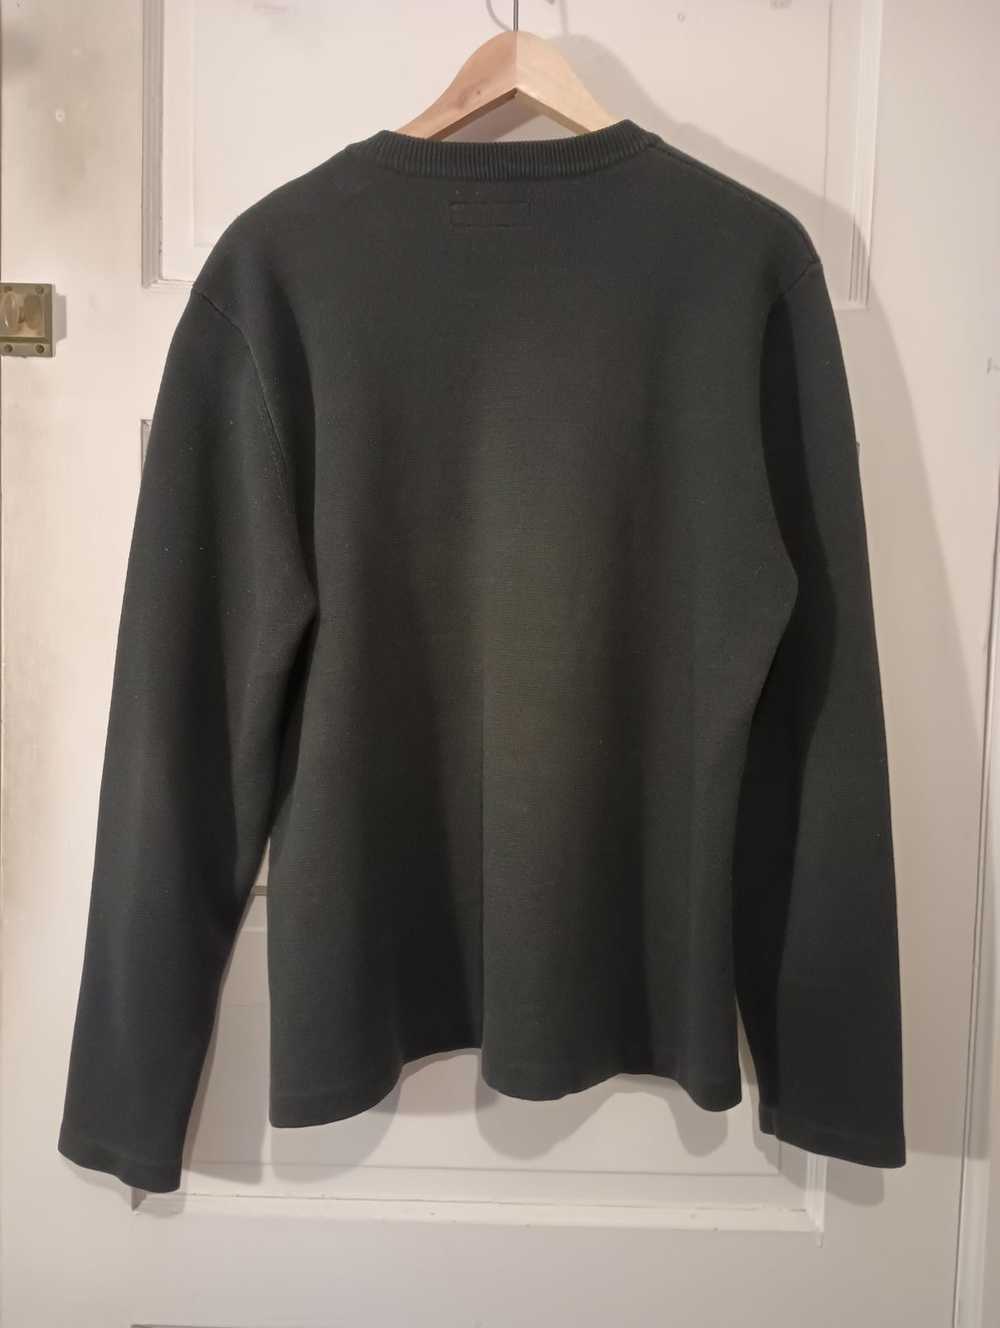 Supreme Supreme thick sweater - image 2